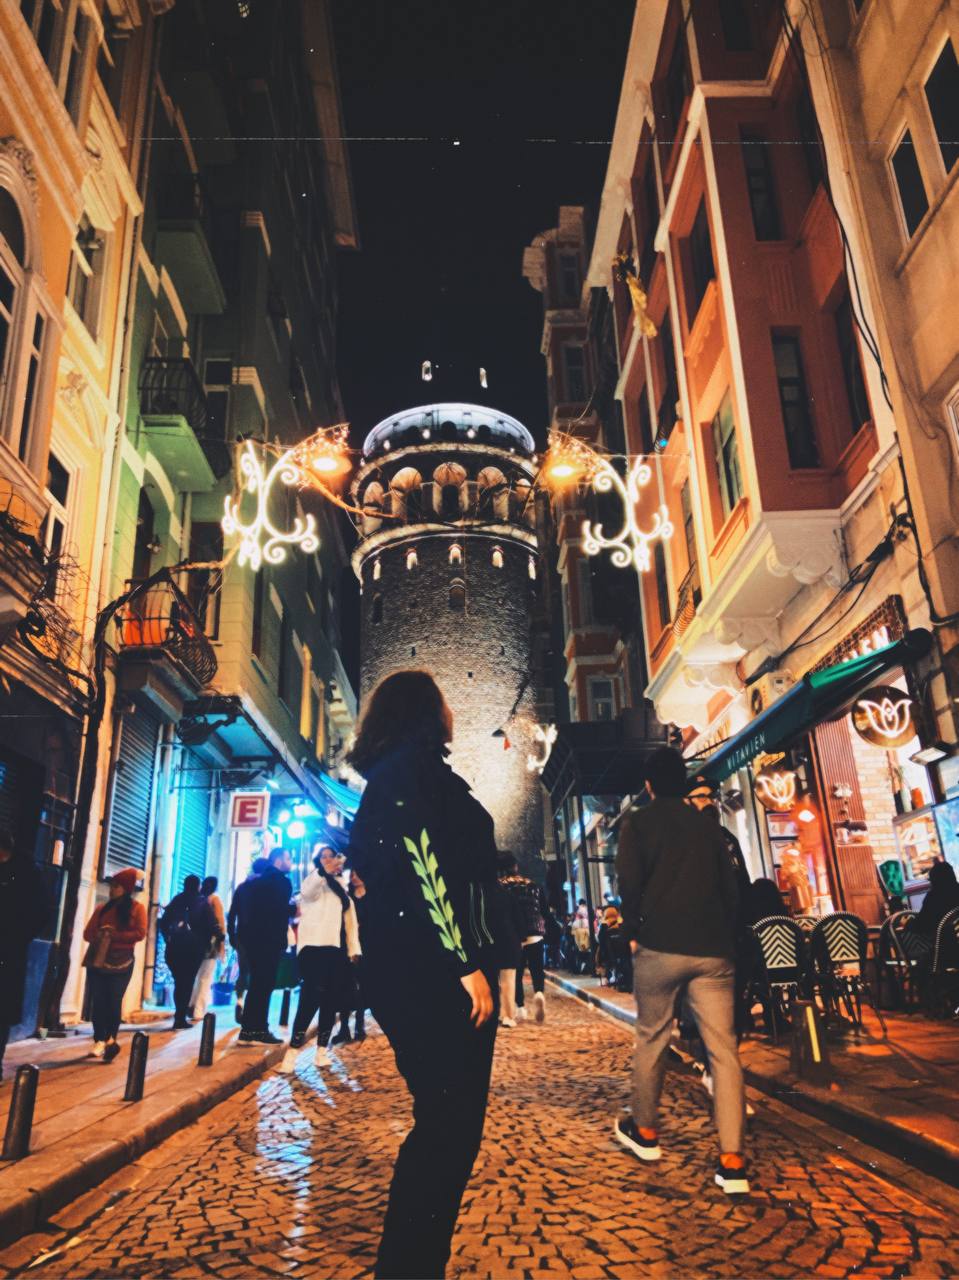 Жительница Владимира Анна Торосян с апреля живет в Стамбуле. За прошедшие месяцы у нее уже сложилось свое представление о том, чем же он отличается от родного города. Итак, погружаемся в атмосферу Турции и узнаем о ее столице все самое интересное.